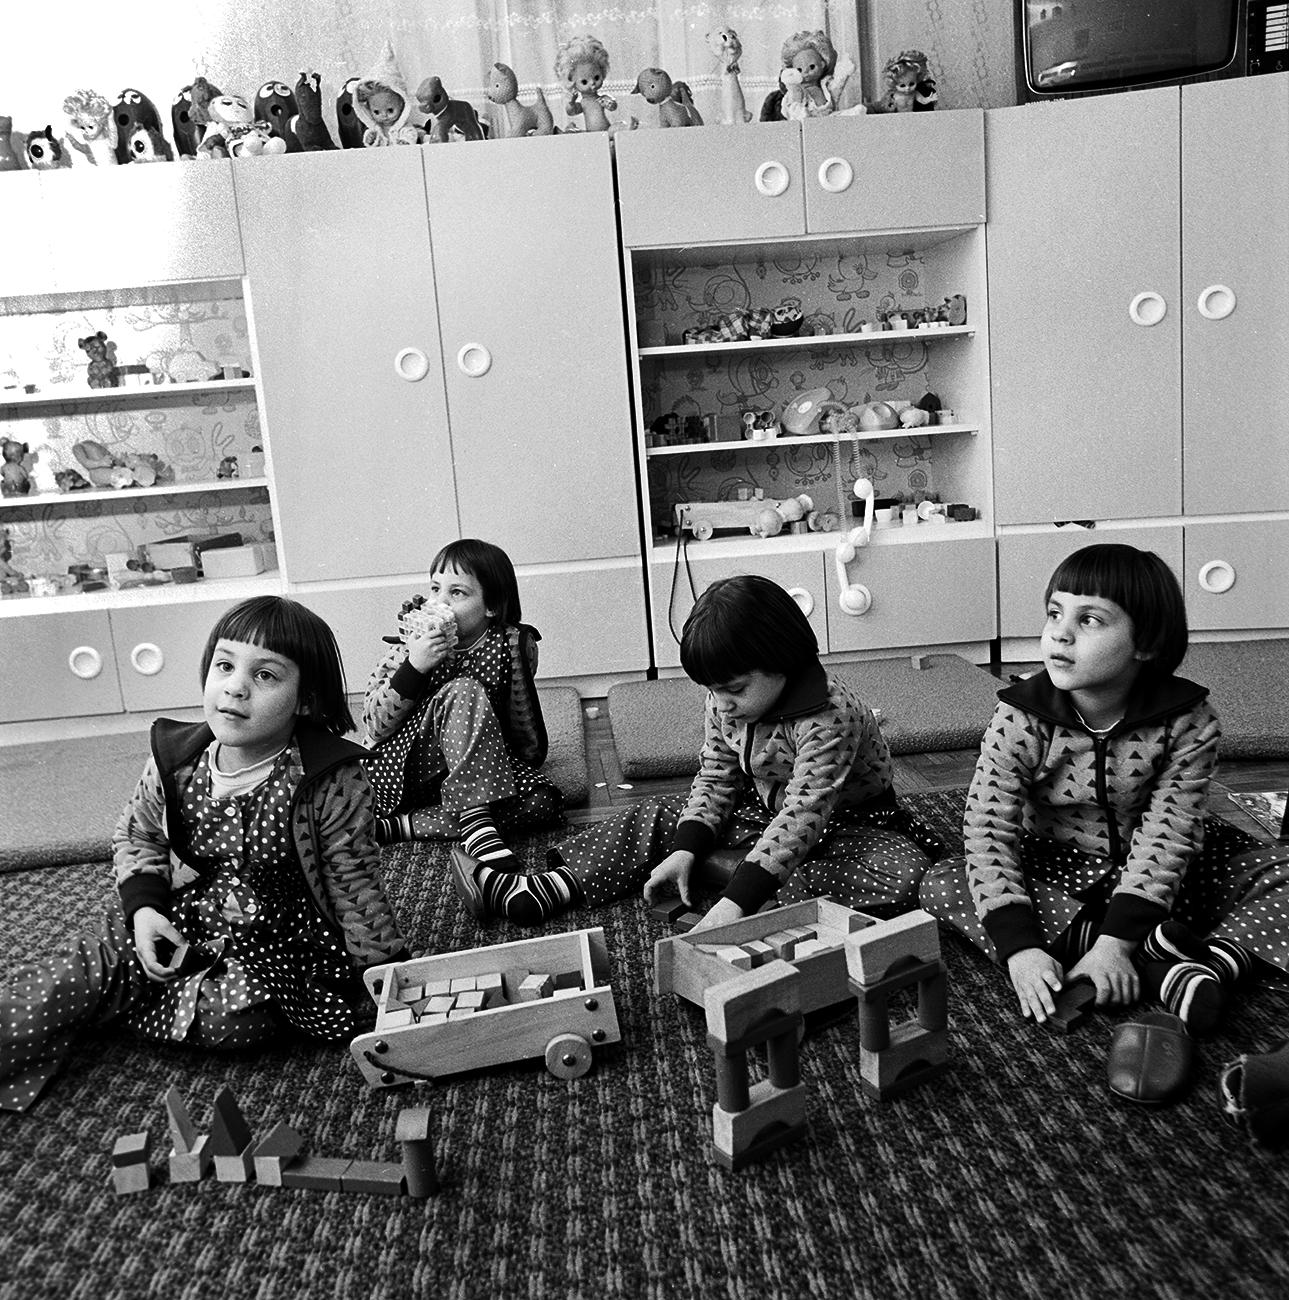 Nagy hír volt 1974. november 22-én, mikor megszülettek a csepregi Kovács négyes ikrek. A kislányokat 1976 májusában még a Képes Újság is címlapján hozta, hatalmas, elgyötört, kék plüssmedve feküdt a gyerekek előtt. 1979-ben pedig az Ikrek és ikrek so